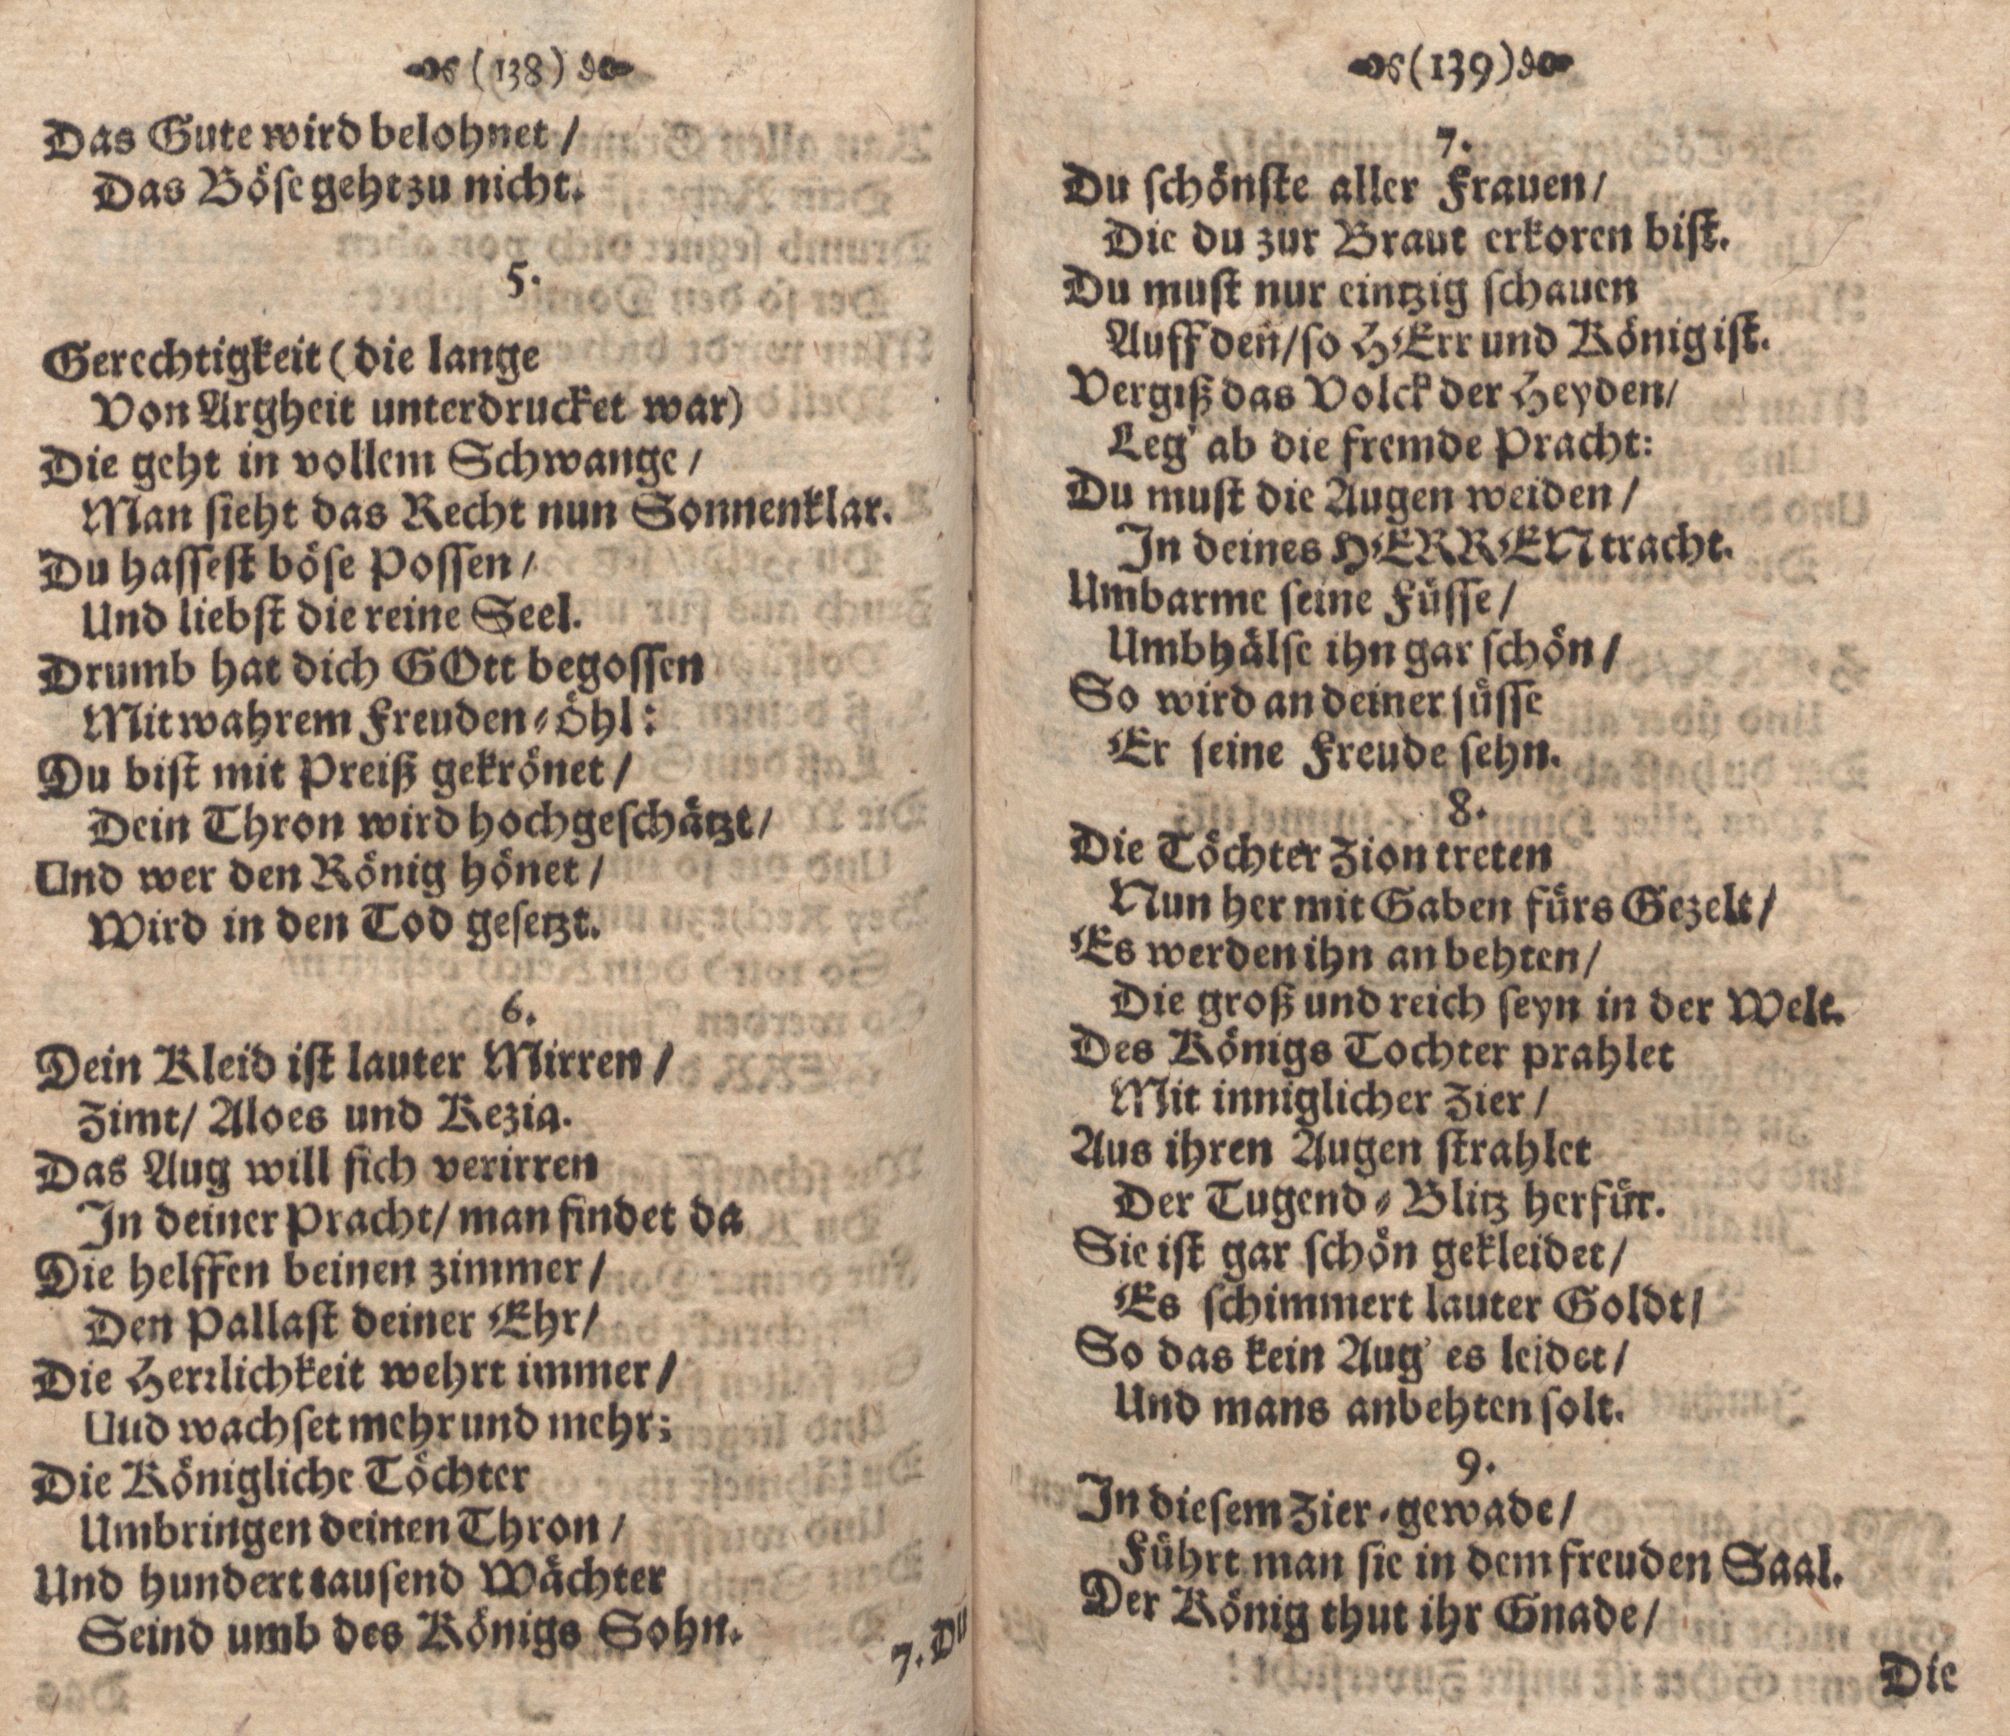 Der Verfolgete, Errettete und Lobsingende David (1686) | 70. (138-139) Main body of text